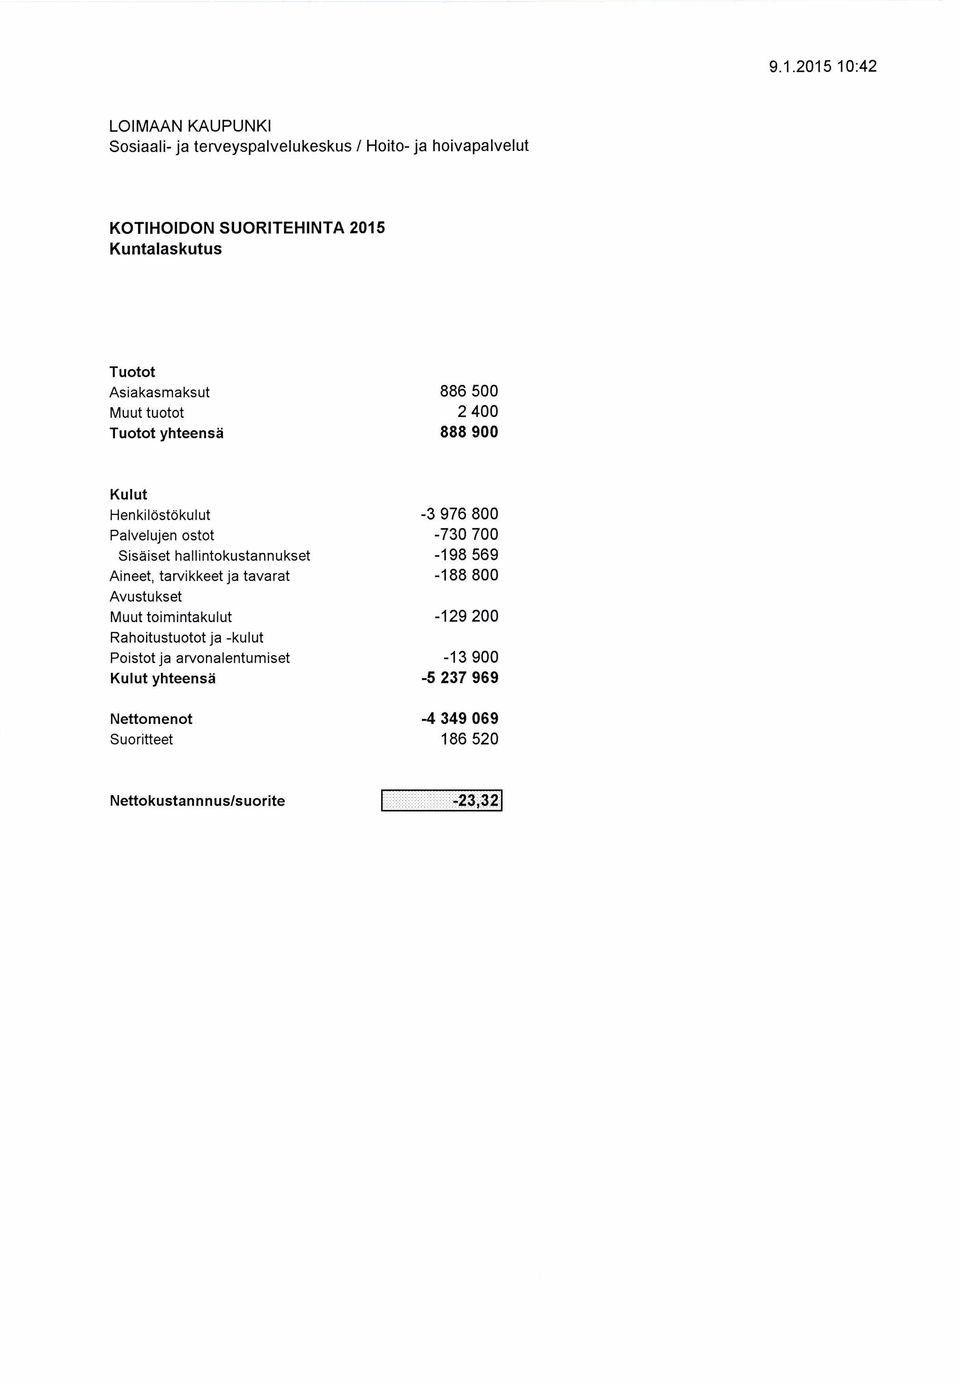 Sisäiset hallintokustannukset - 198 569 Aineet, tarvikkeet ja tavarat -188 8 Muut toimintakulut